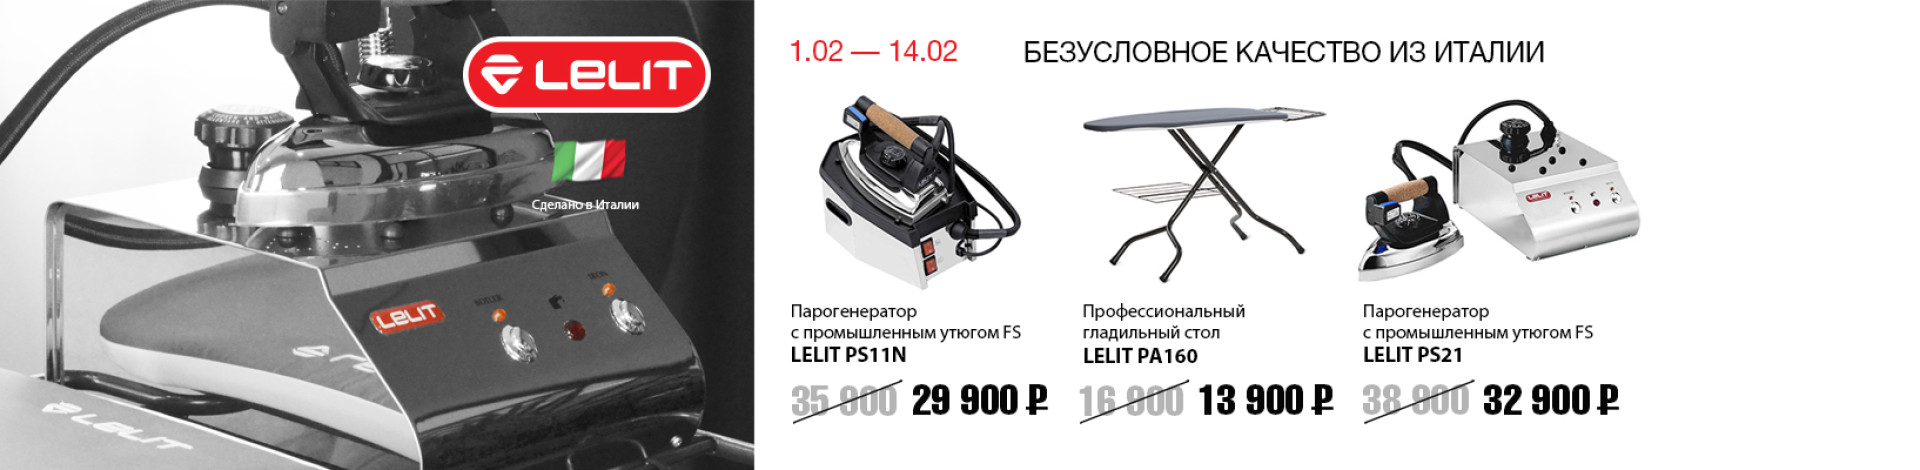 С 1 февраля по 14 февраля снижение цен на избранное парогладильное оборудование LELIT